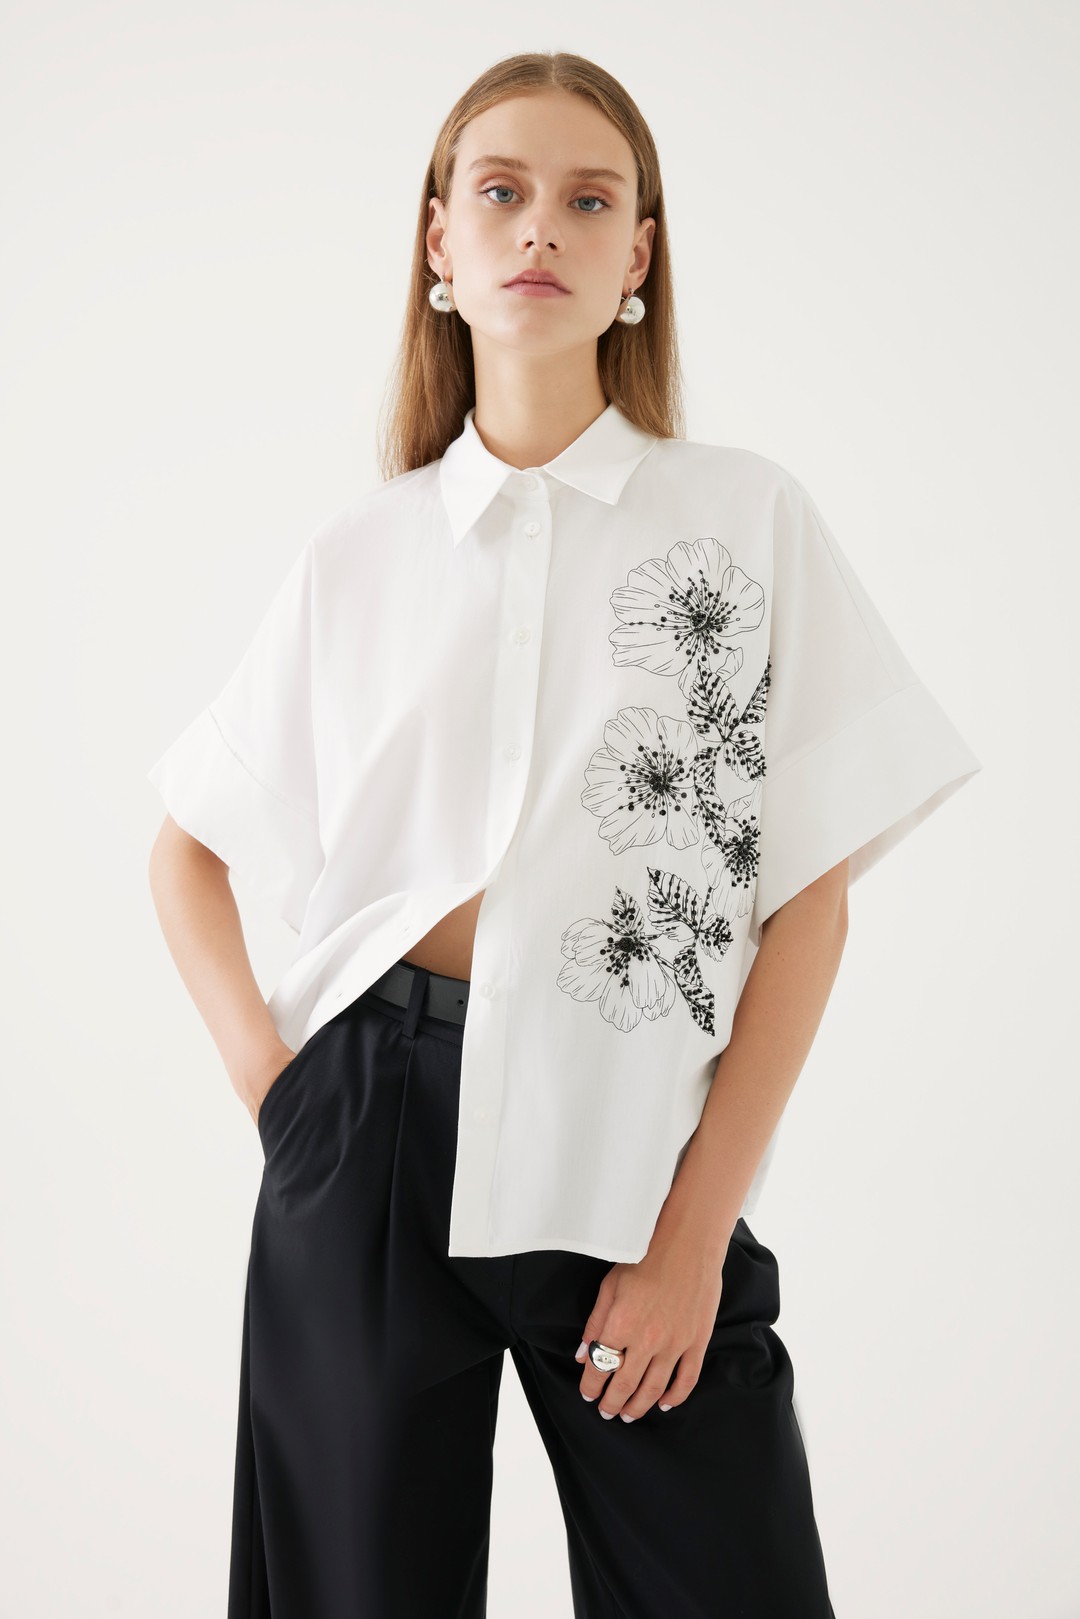 Çiçekli ve Beyaz Gömlek Tasarımı 1